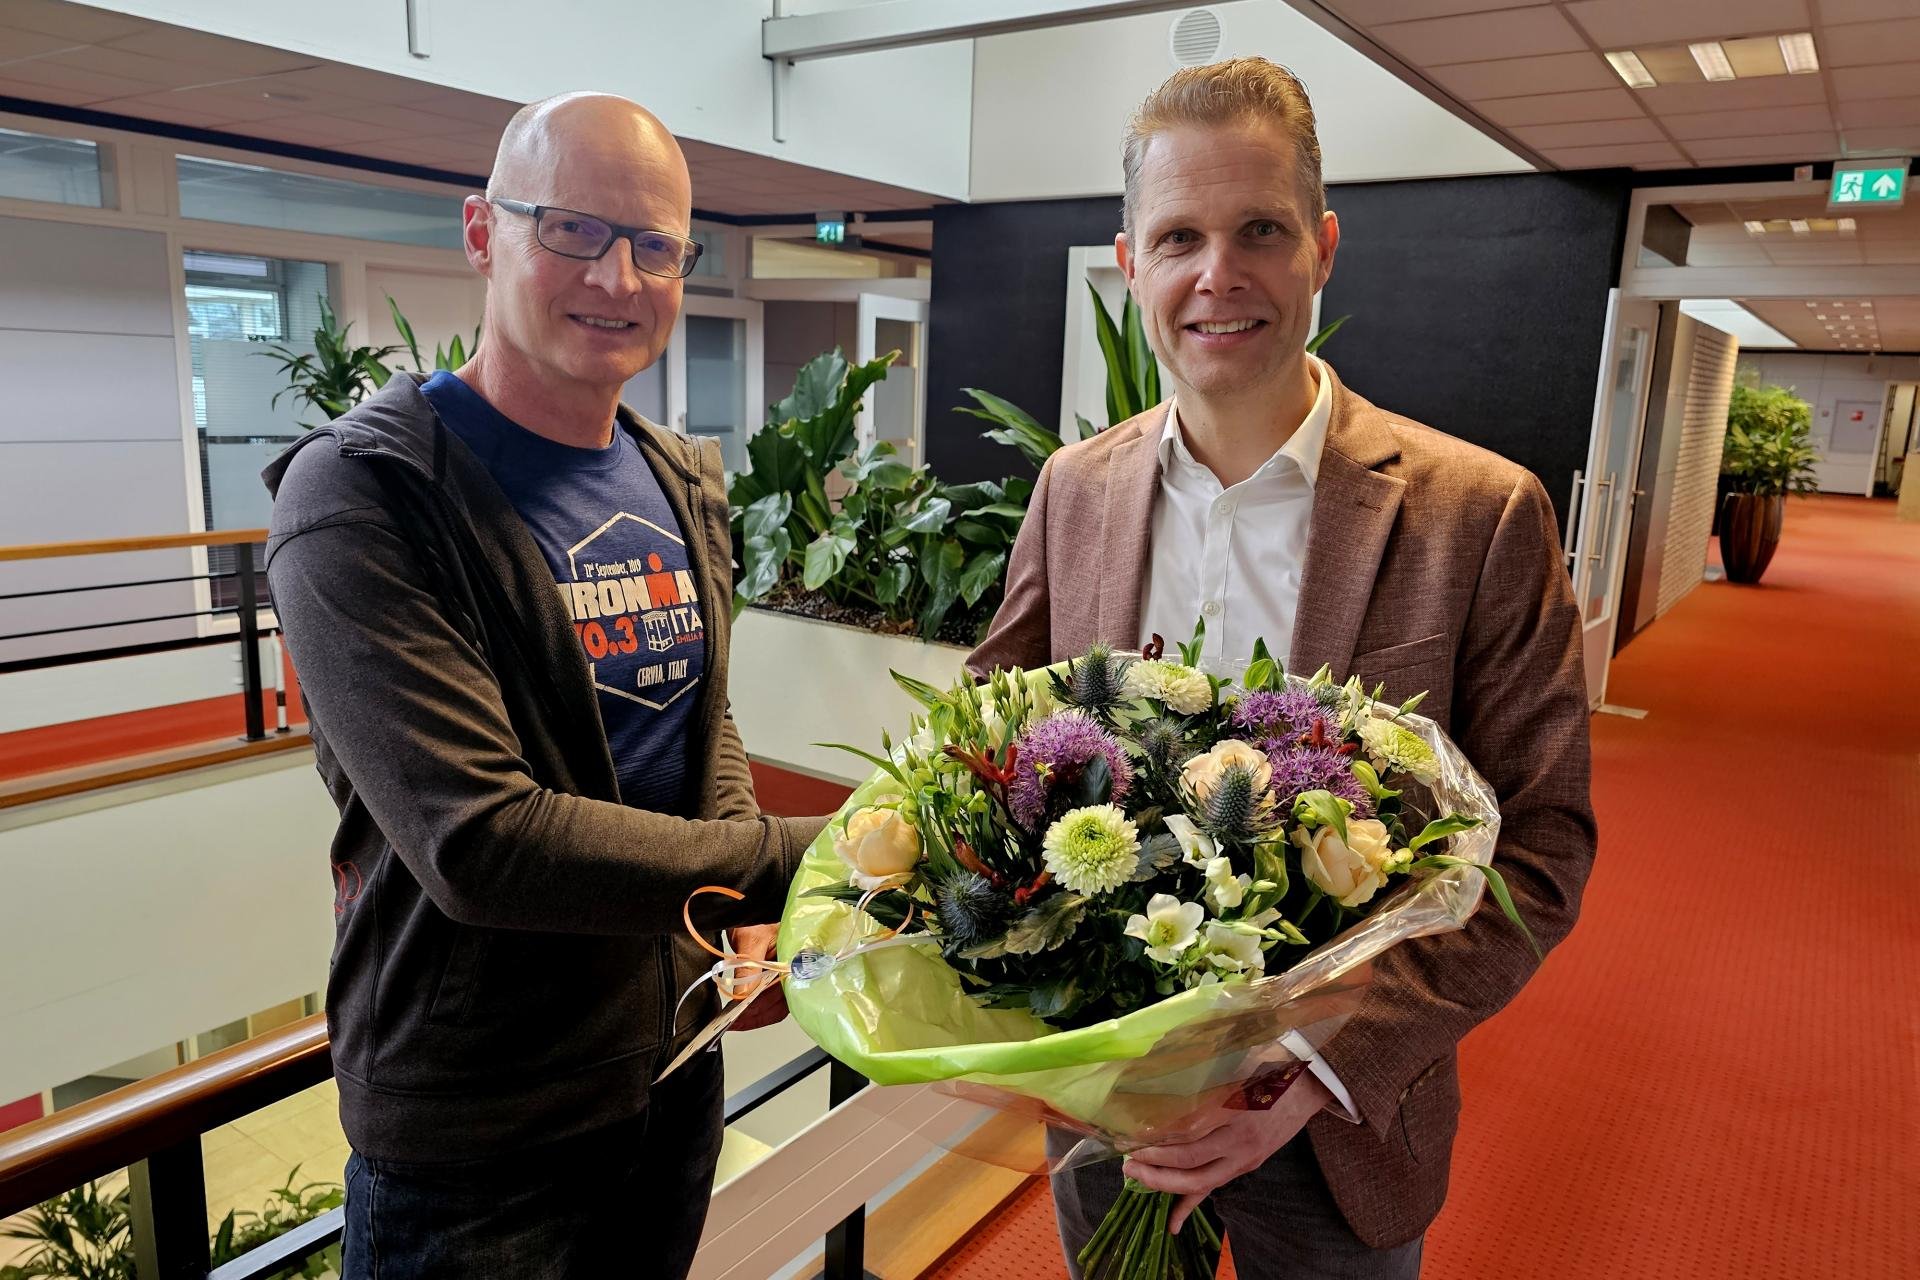 Sportkampioen Theo Fuhler samen met wethouder Pascal Schrik die een bos bloemen in zijn hand heeft